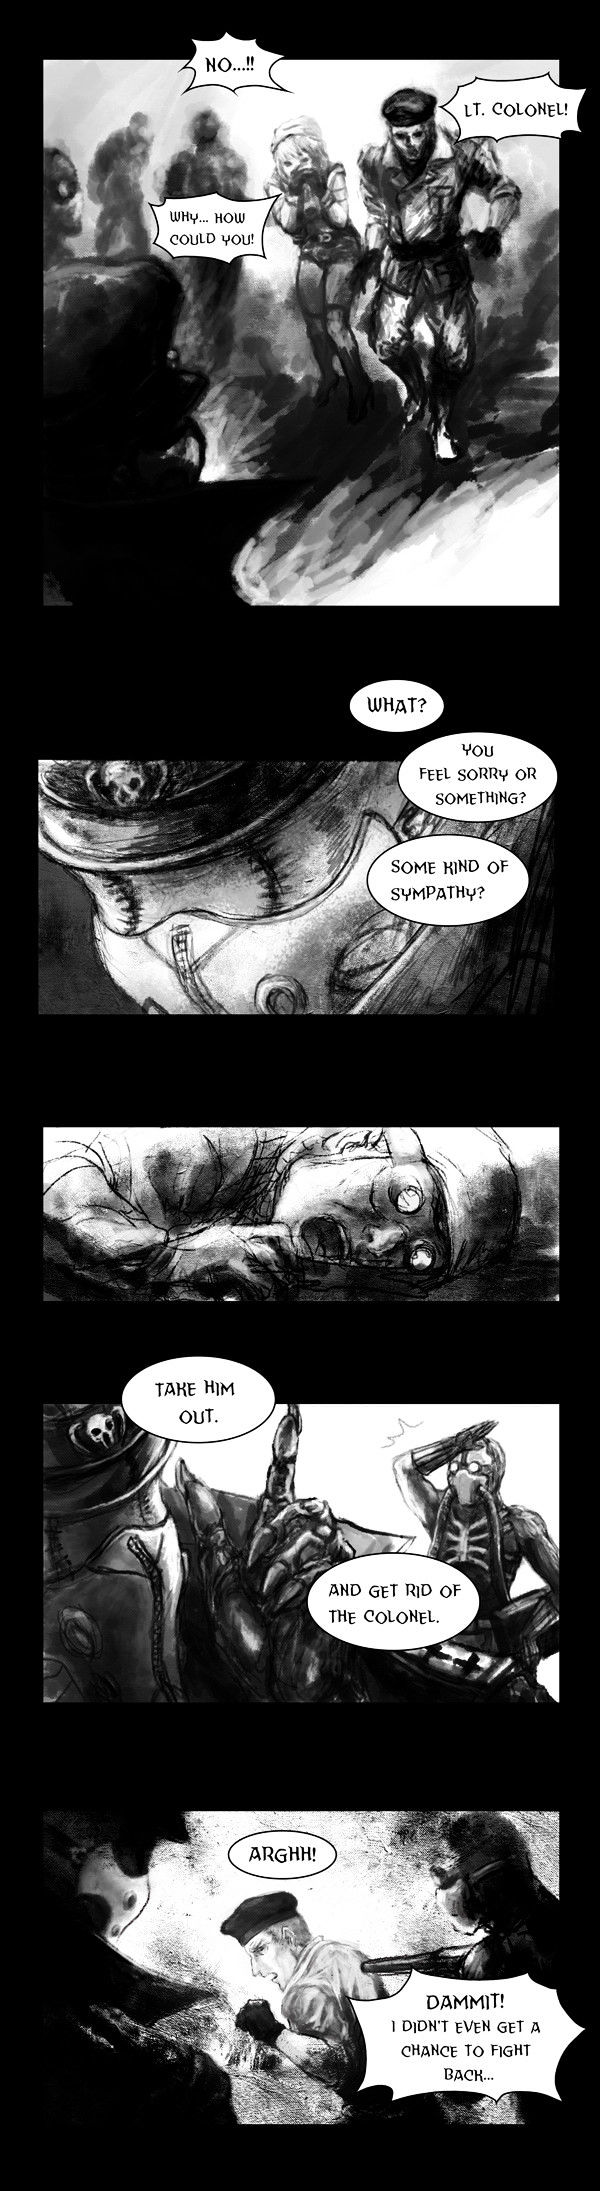 Deadbrain - Page 2